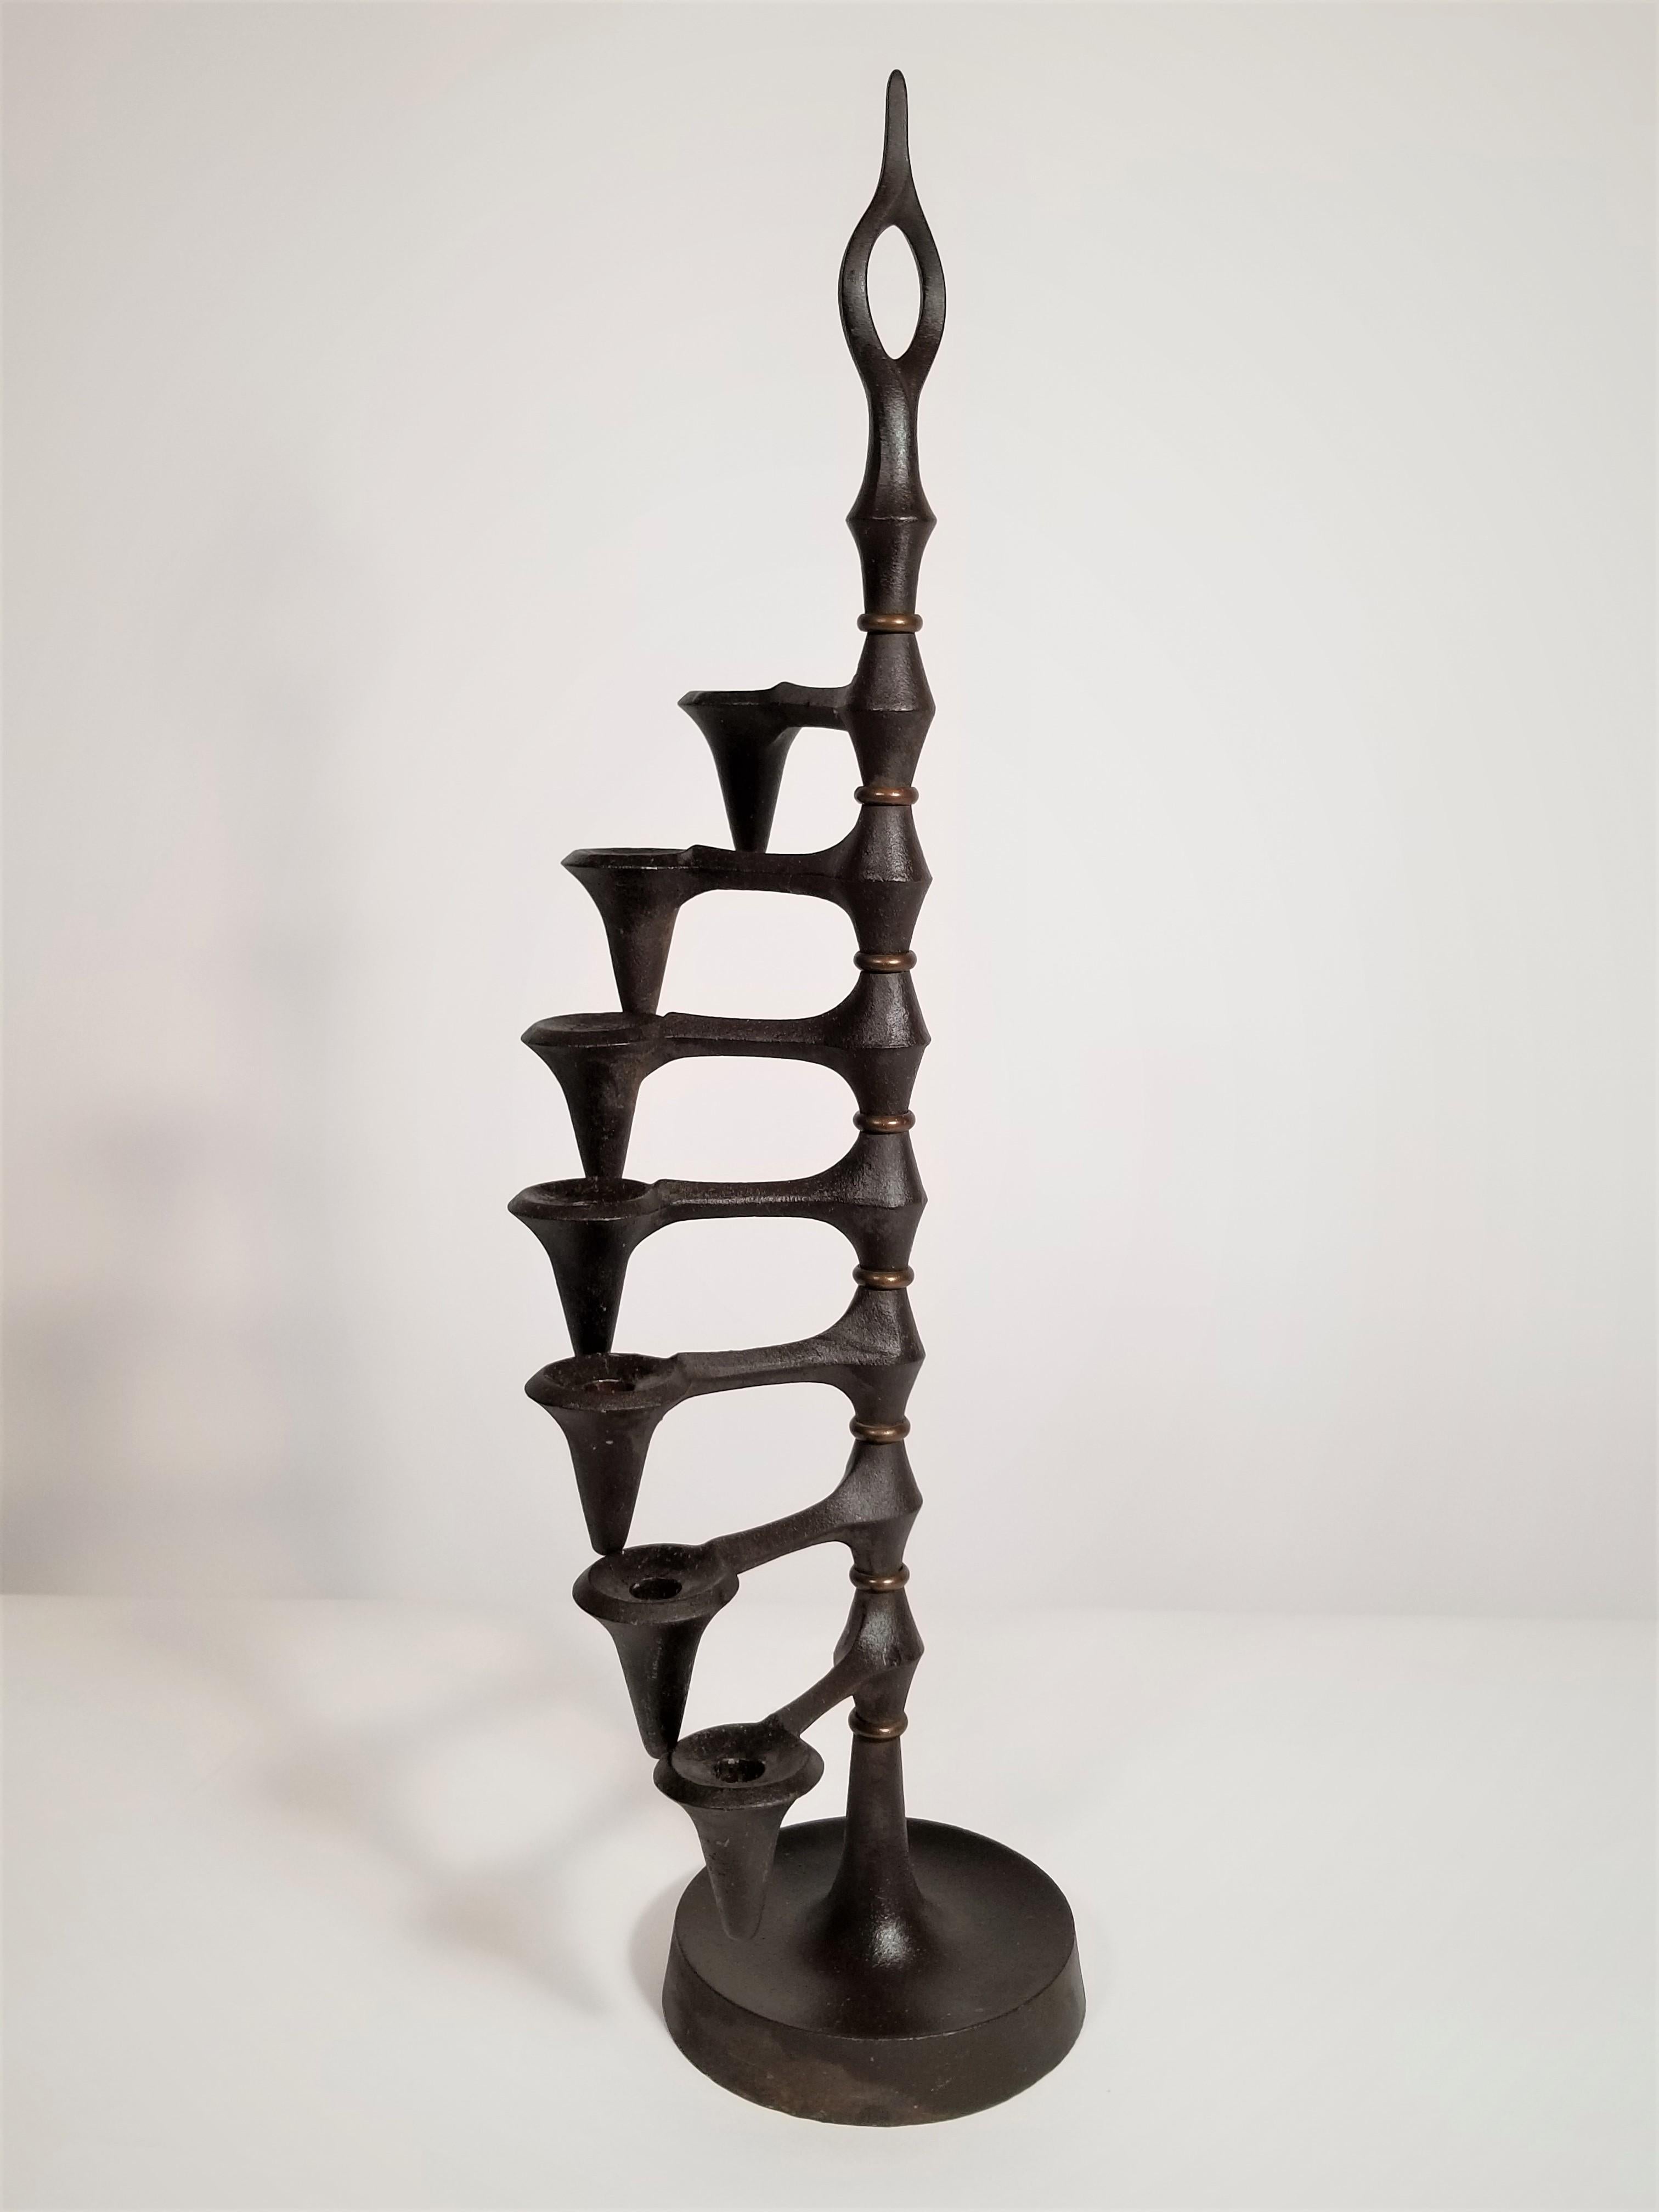 Siebenarmiger Kerzenhalter aus der Mitte der 1960er Jahre, entworfen von Jens Quistgaard JHQ für Dansk, Dänemark. Solide Eisen dunkelbraune Farbe. Modernistisches skulpturales Design. Jeder Kerzenarm ist schwenkbar und einstellbar. Markierungen auf